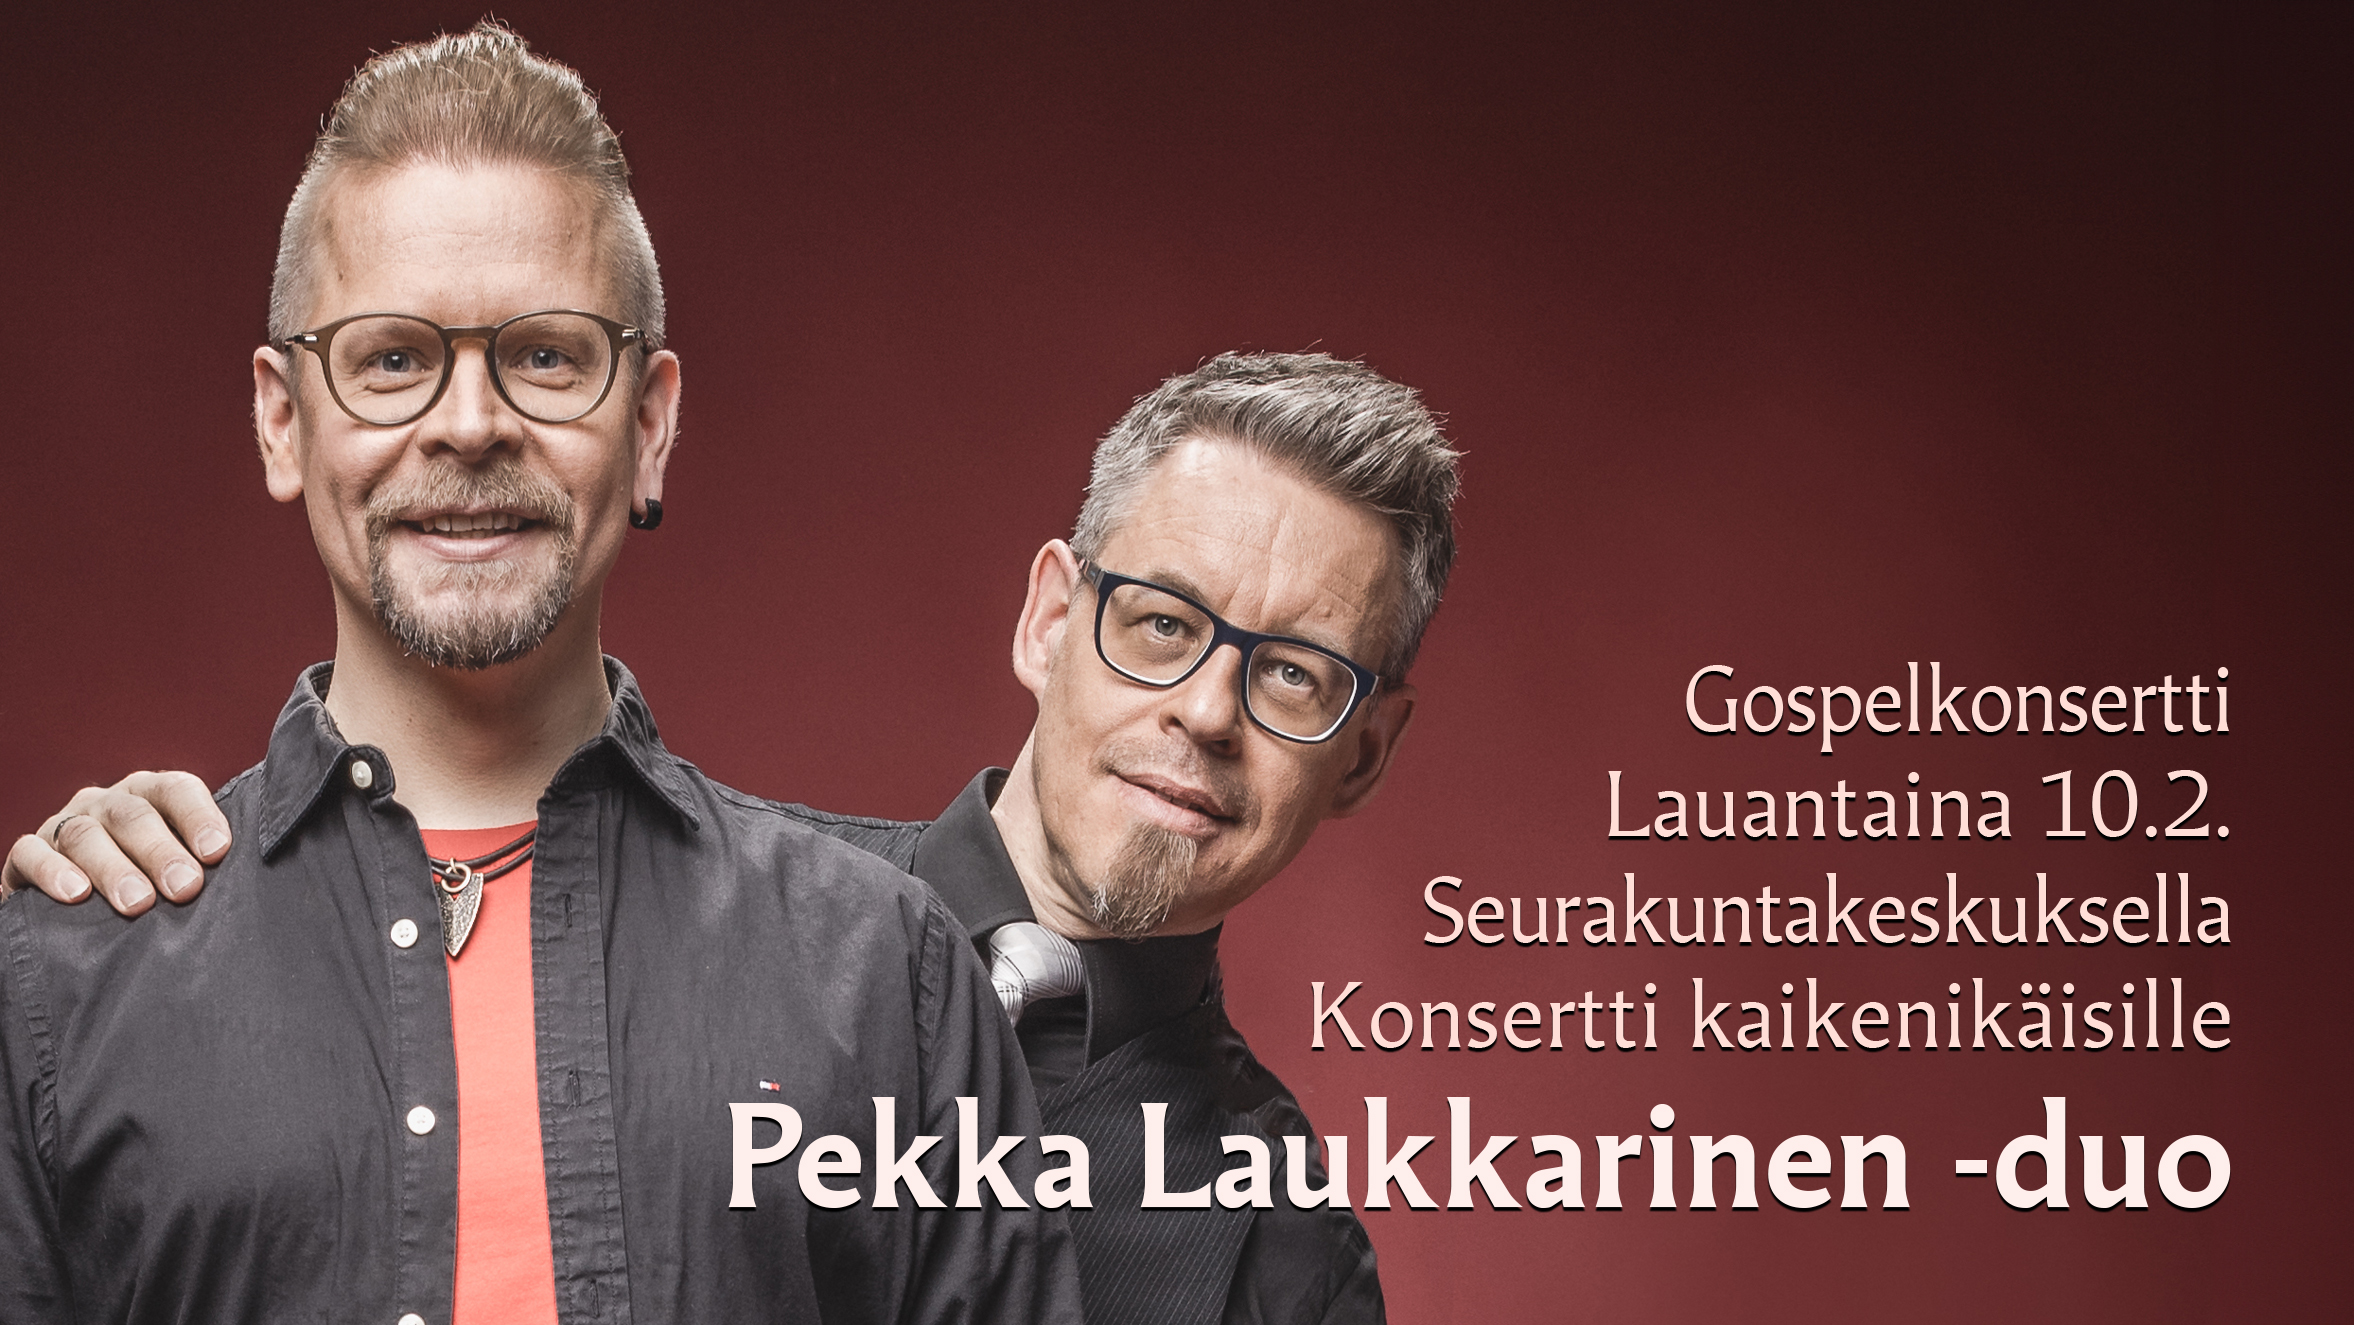 Kuva Pekka Laukkarinen -duosta. Kuvassa Pekka Laukkarinen ja Matti Laitinen.